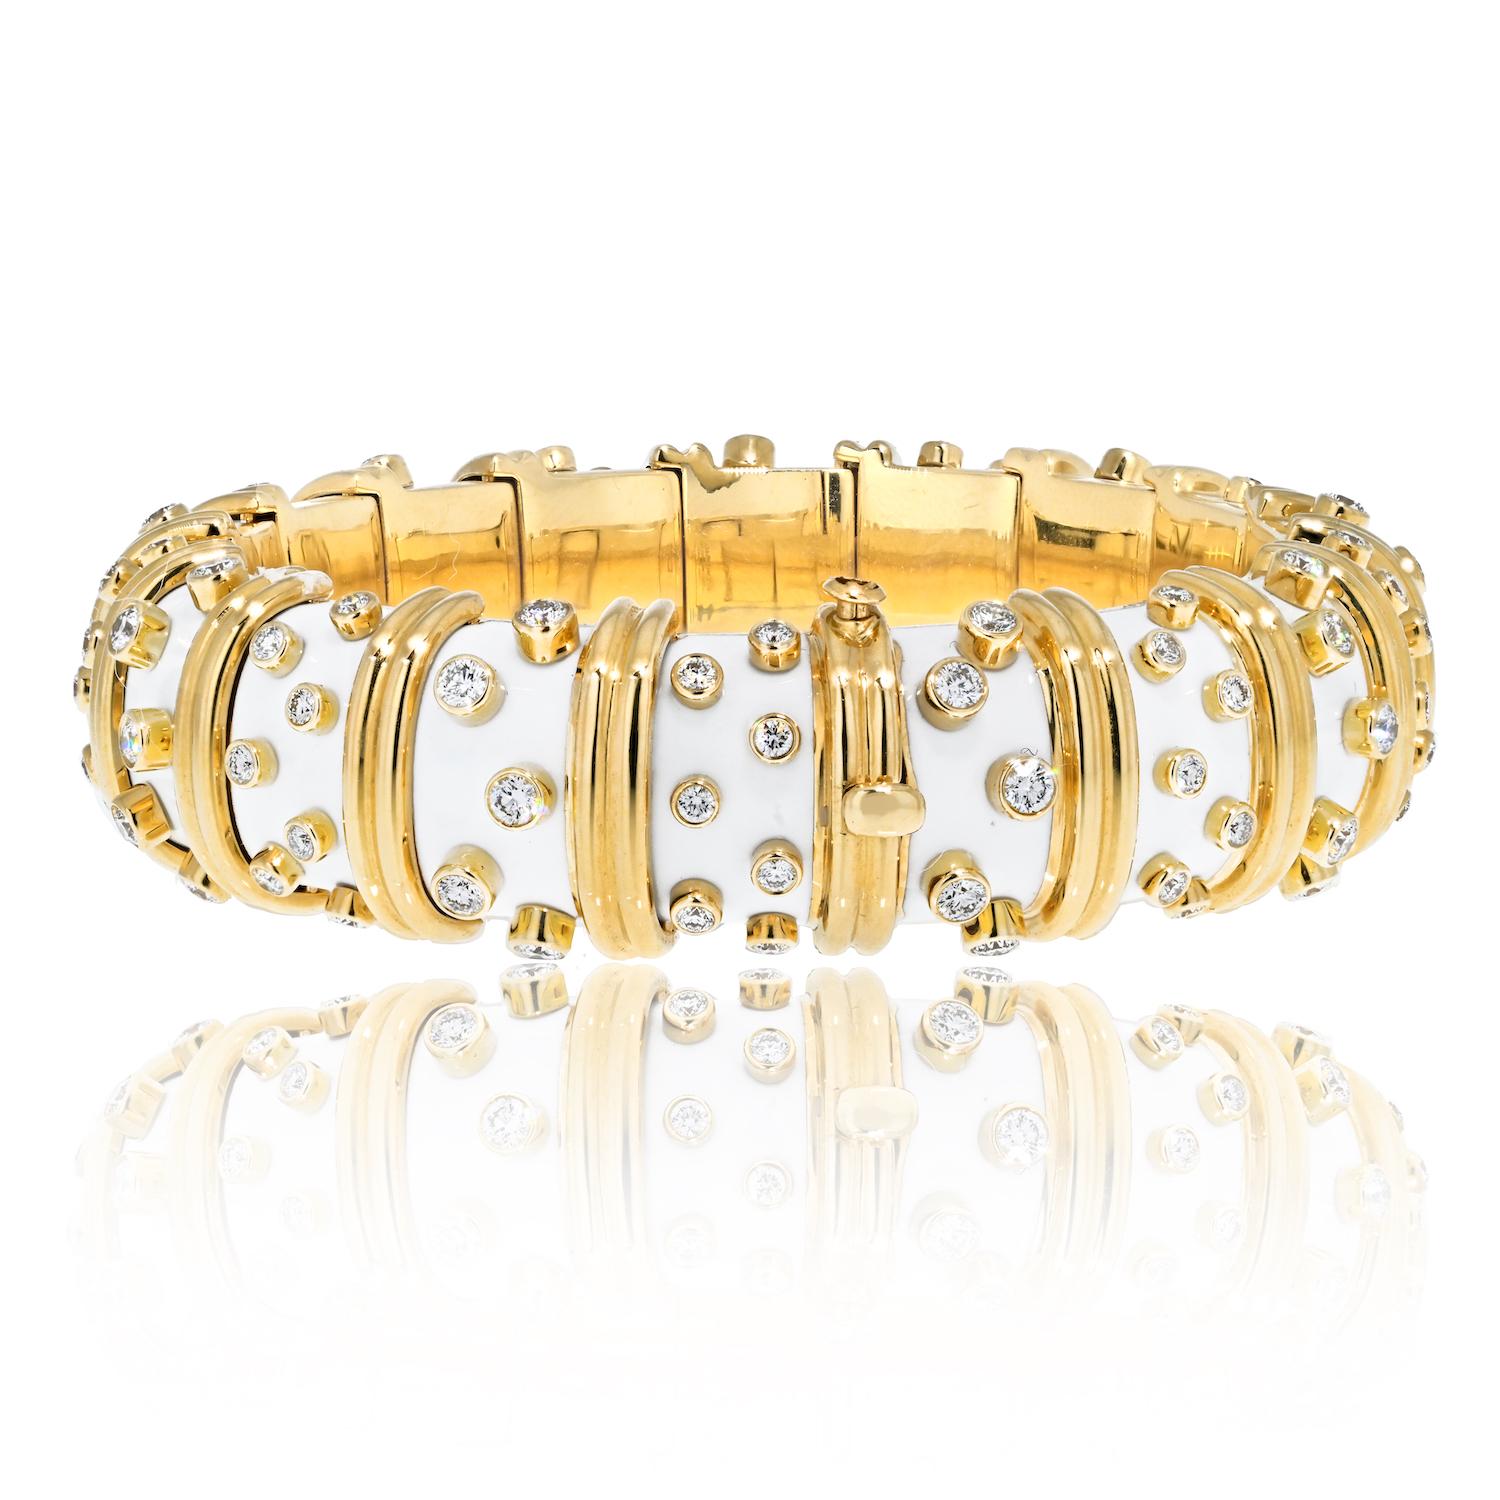 Ein Meisterwerk außergewöhnlicher Kunstfertigkeit: die Tiffany & Co. Schlumberger Platin & 18K Gelbgold Weißer Emaille-Diamanten-Armreif. Dieses bemerkenswerte Stück ist ein wahrer Beweis für zeitlose Eleganz und die renommierte Collaboration